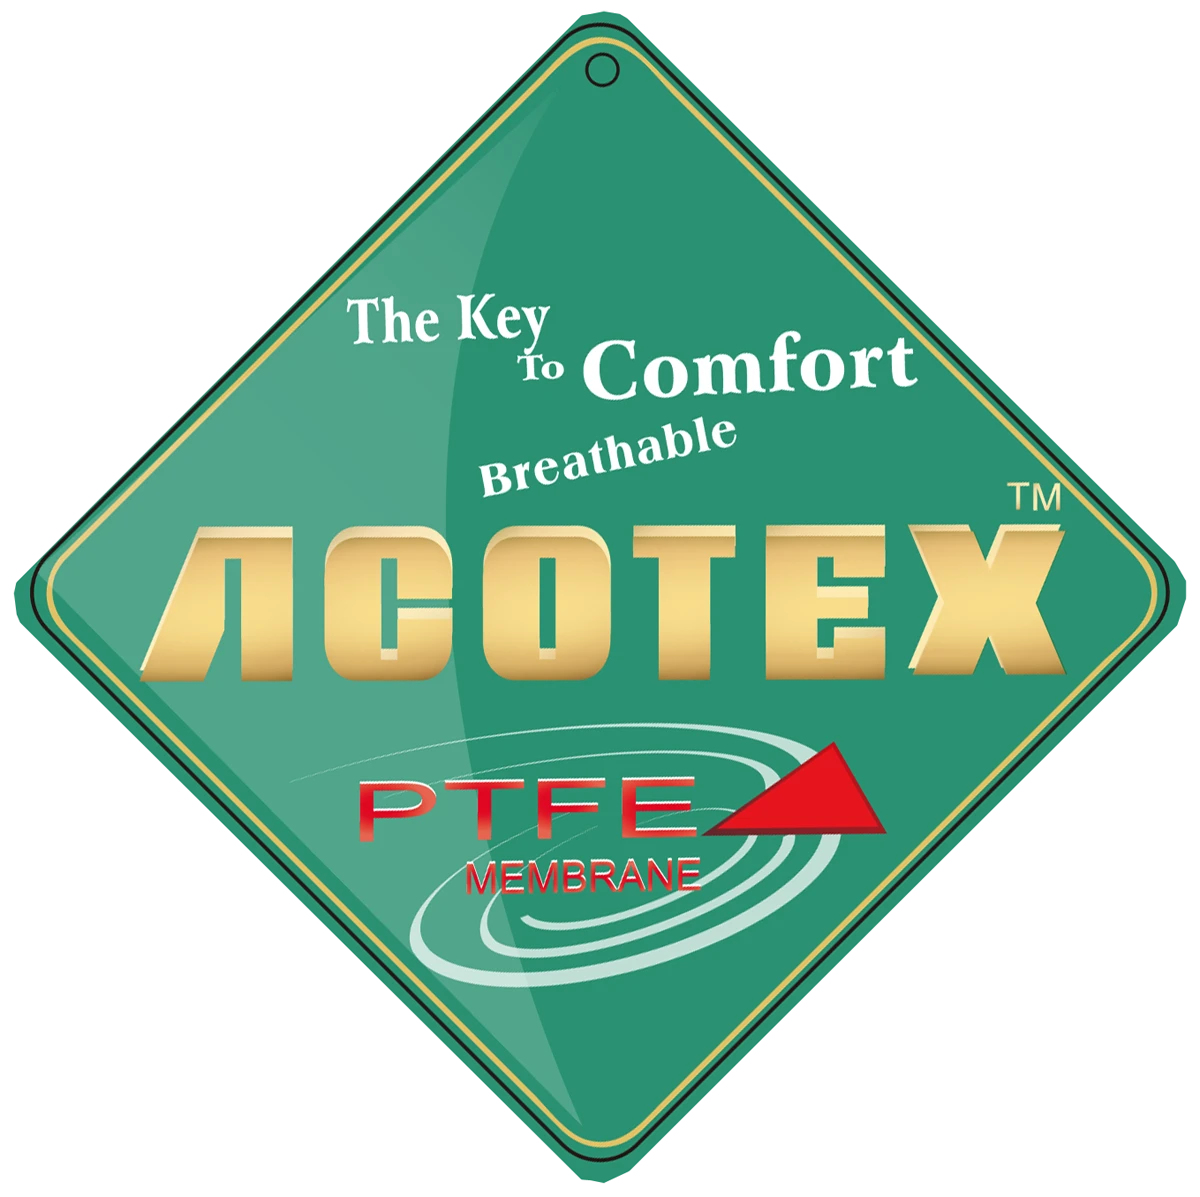 ACOTEX ePTFE 防水透濕透品質保證吊牌